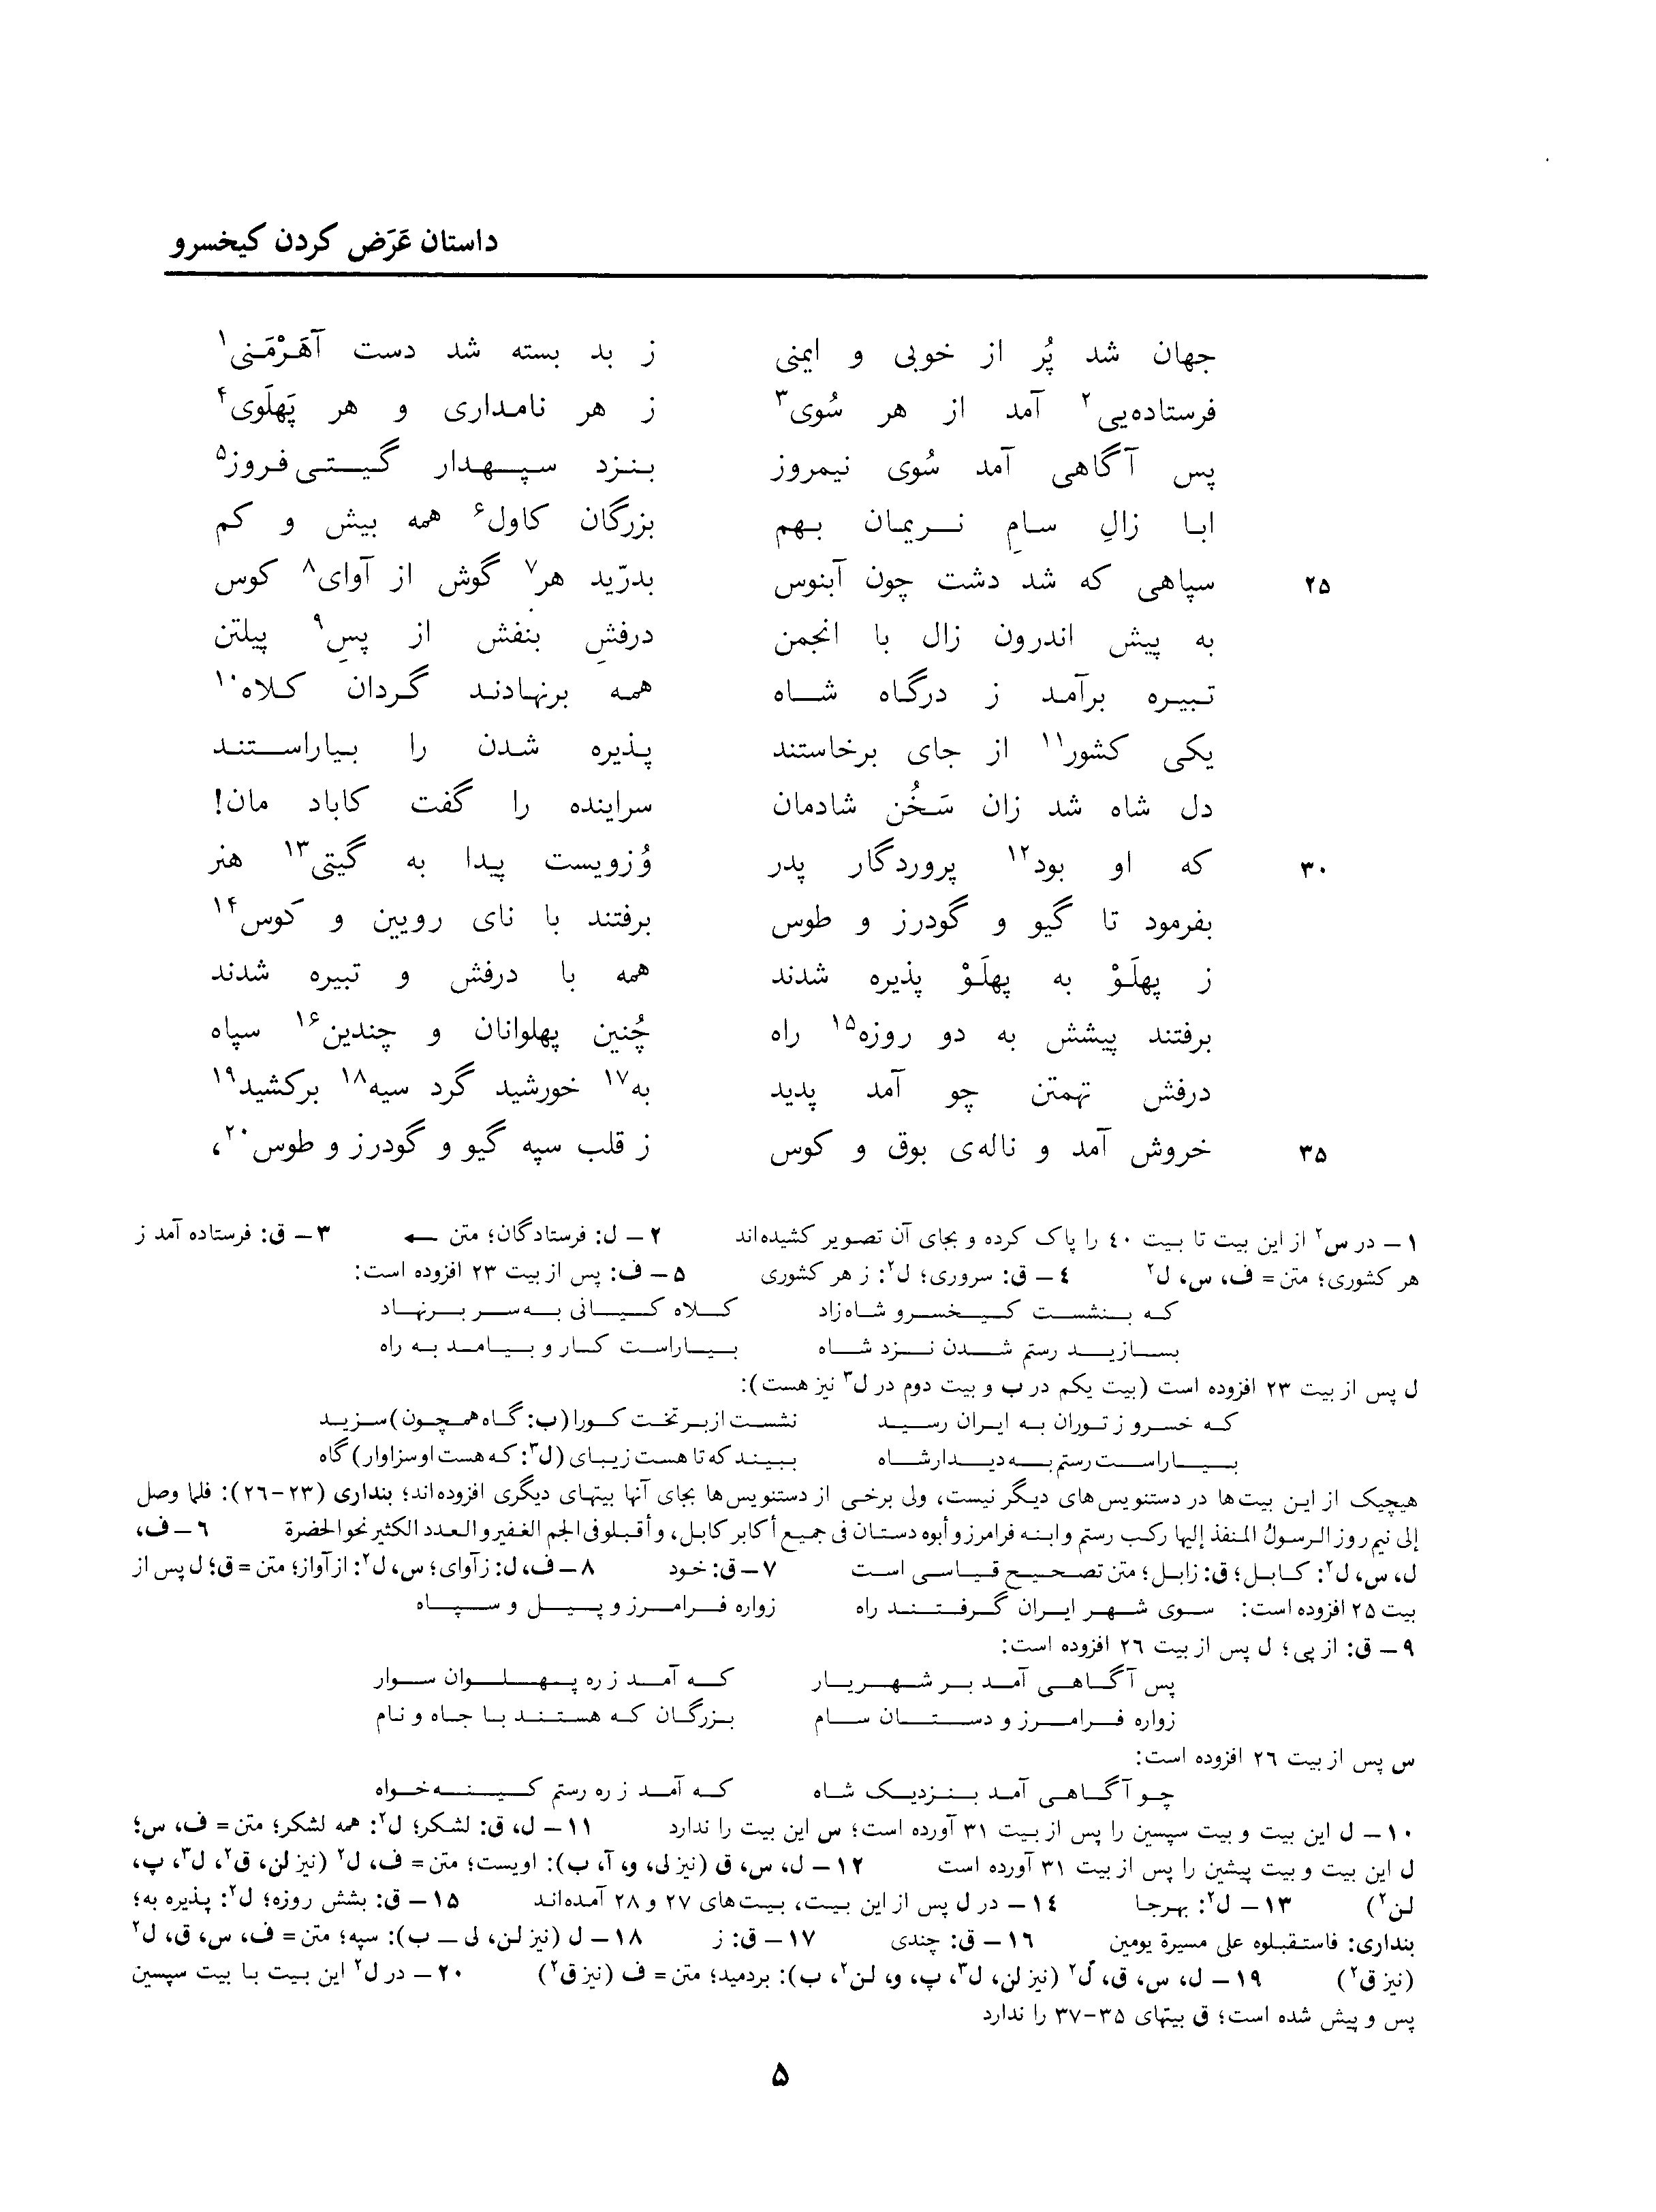 vol. 3, p. 5